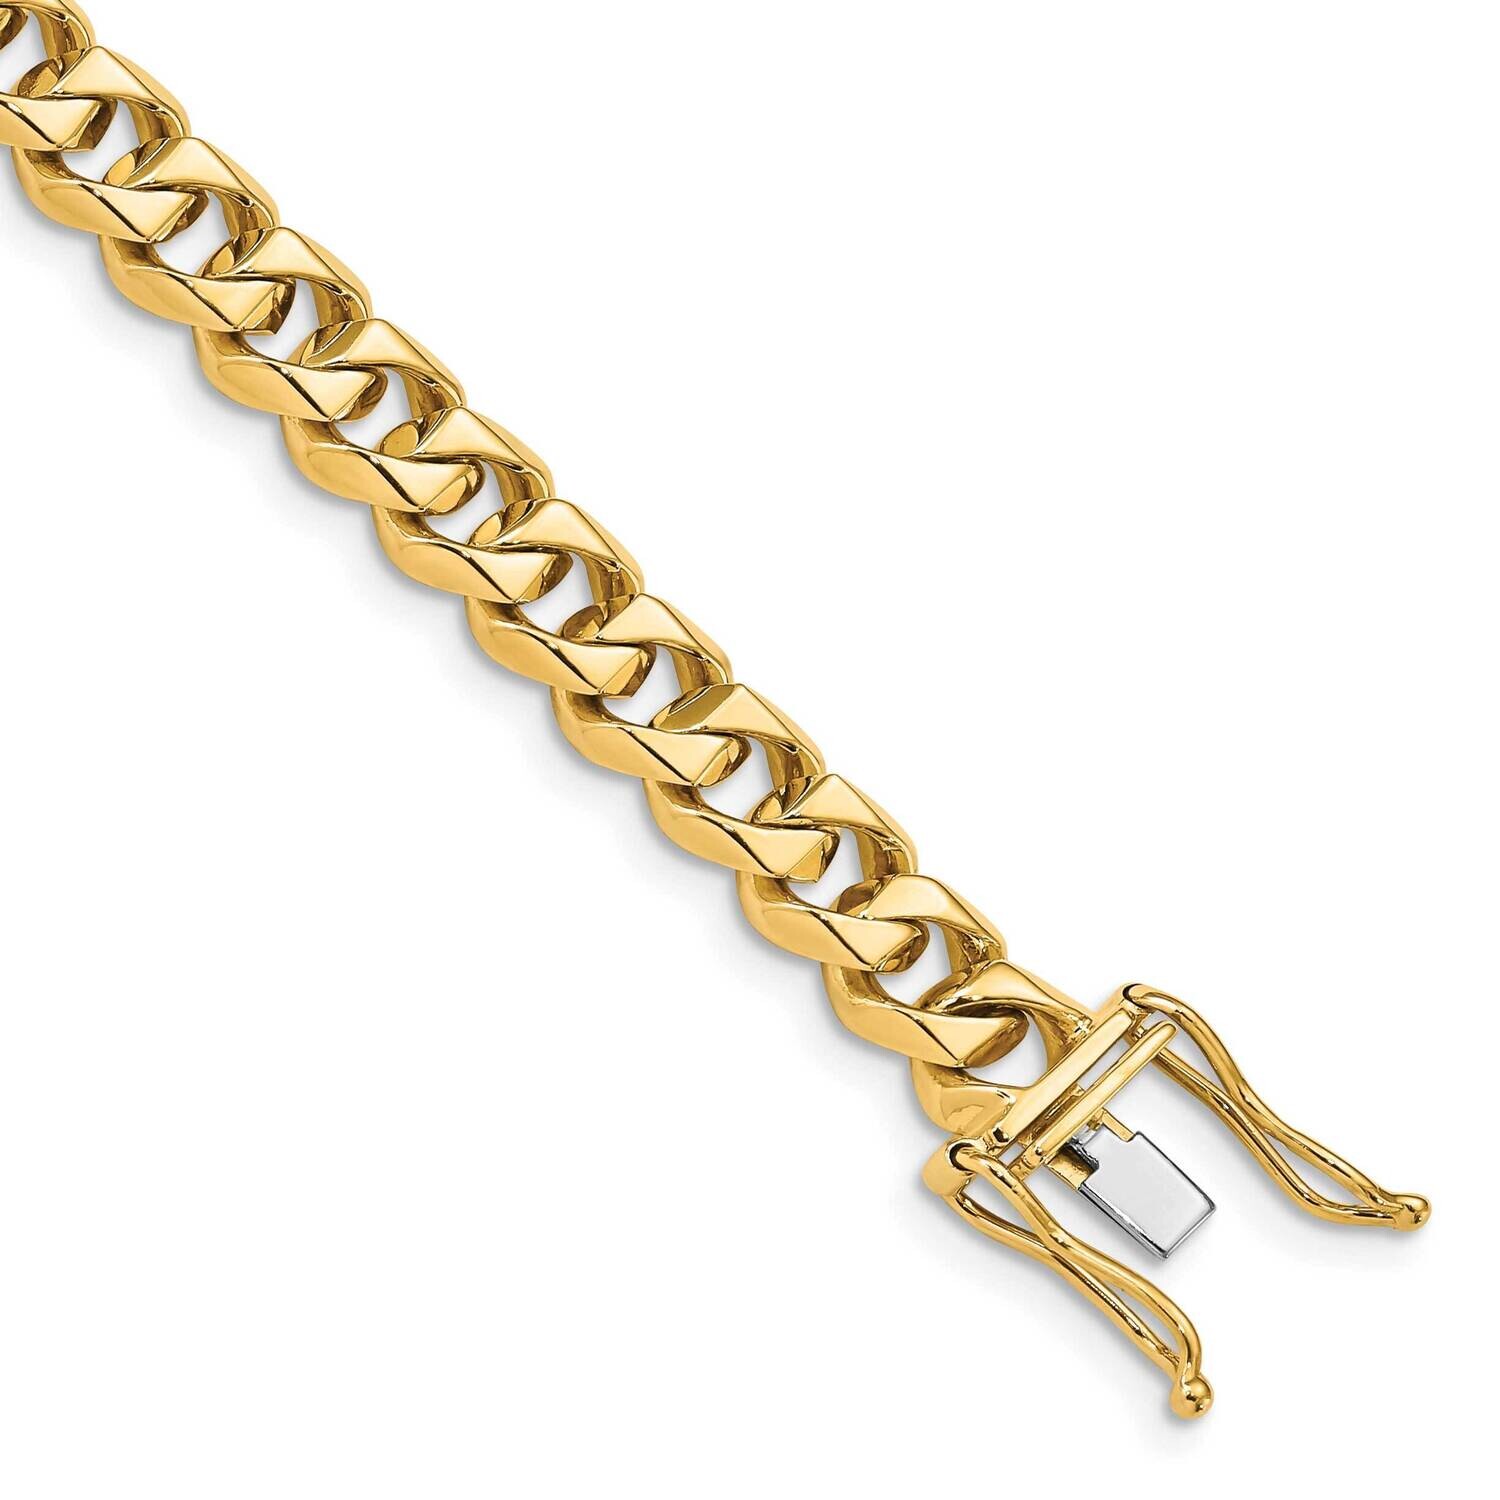 7mm Hand-Polished Traditional Link Bracelet 8 Inch 10k Gold 10LK117-8